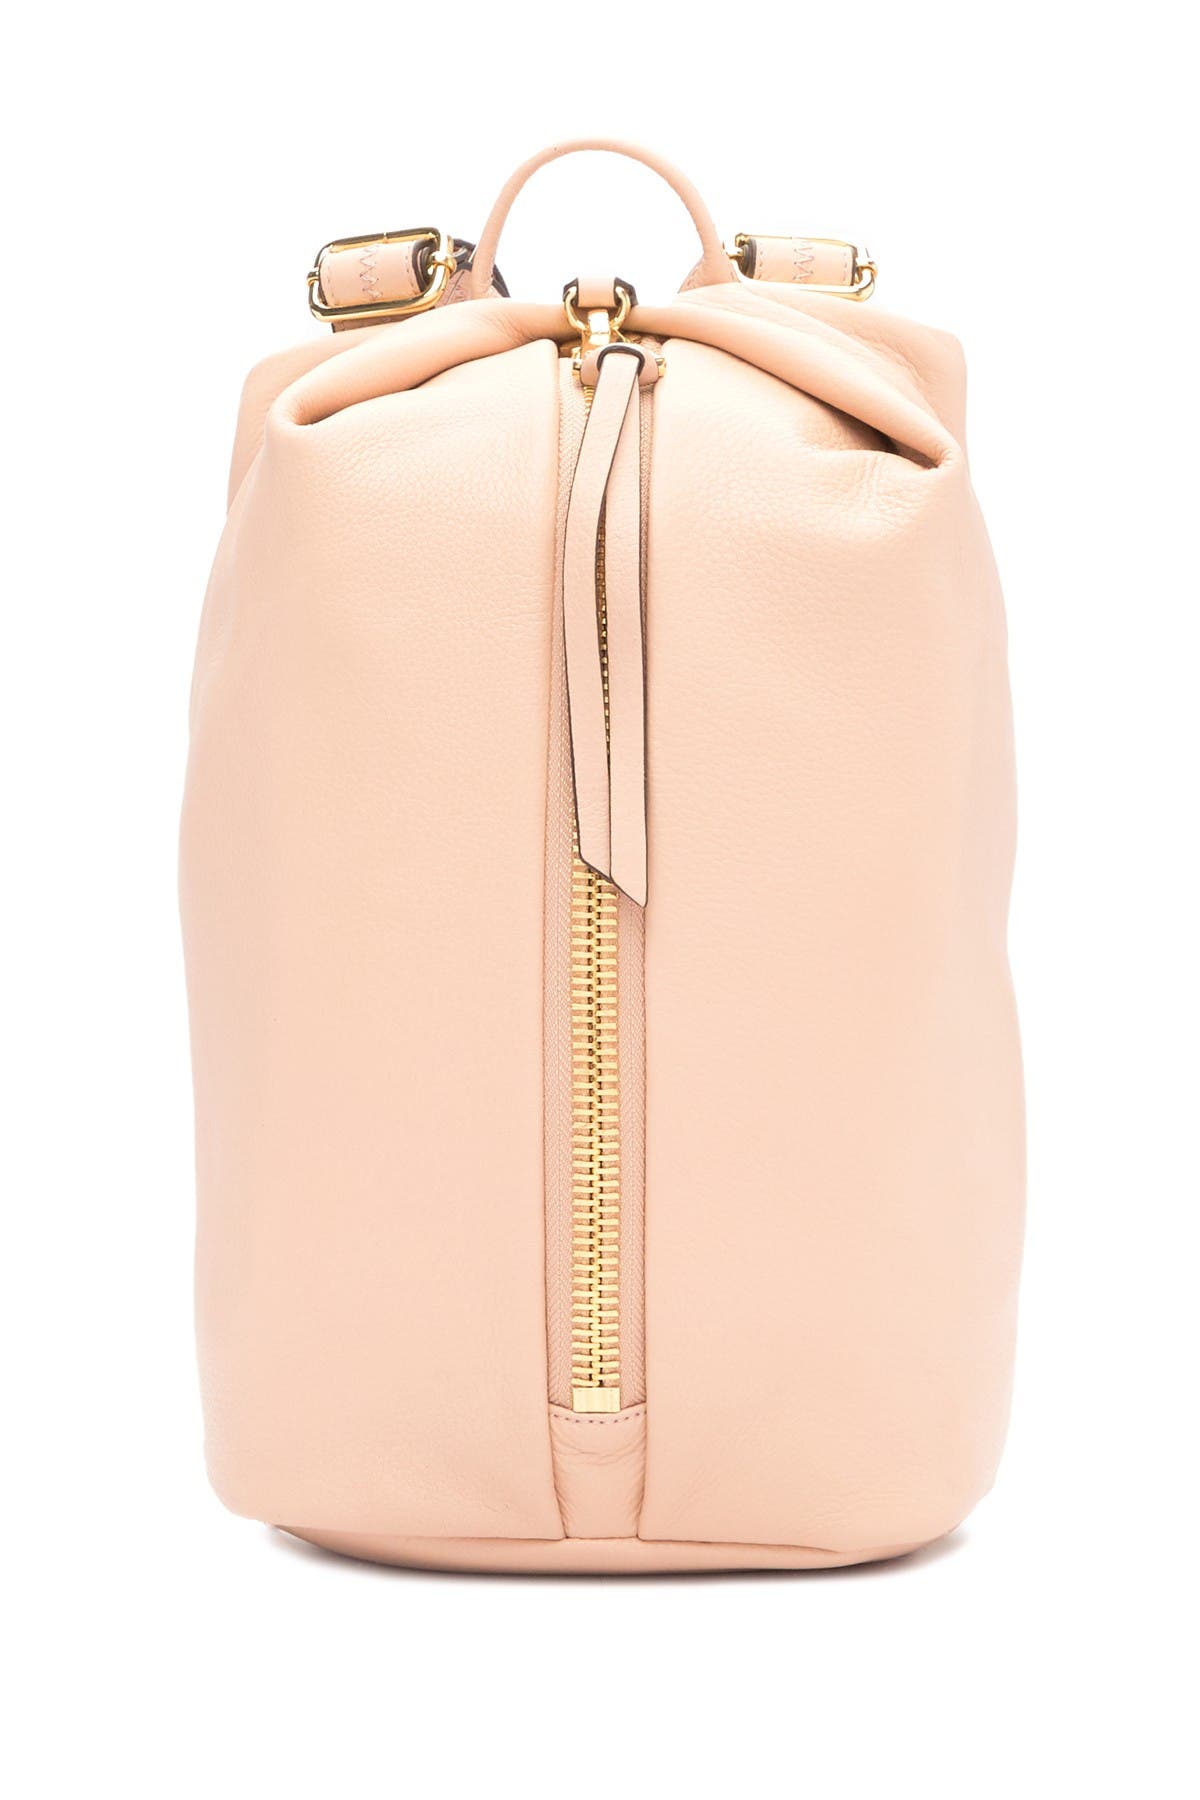 Aimee Kestenberg Tamitha Leather Backpack In Blush